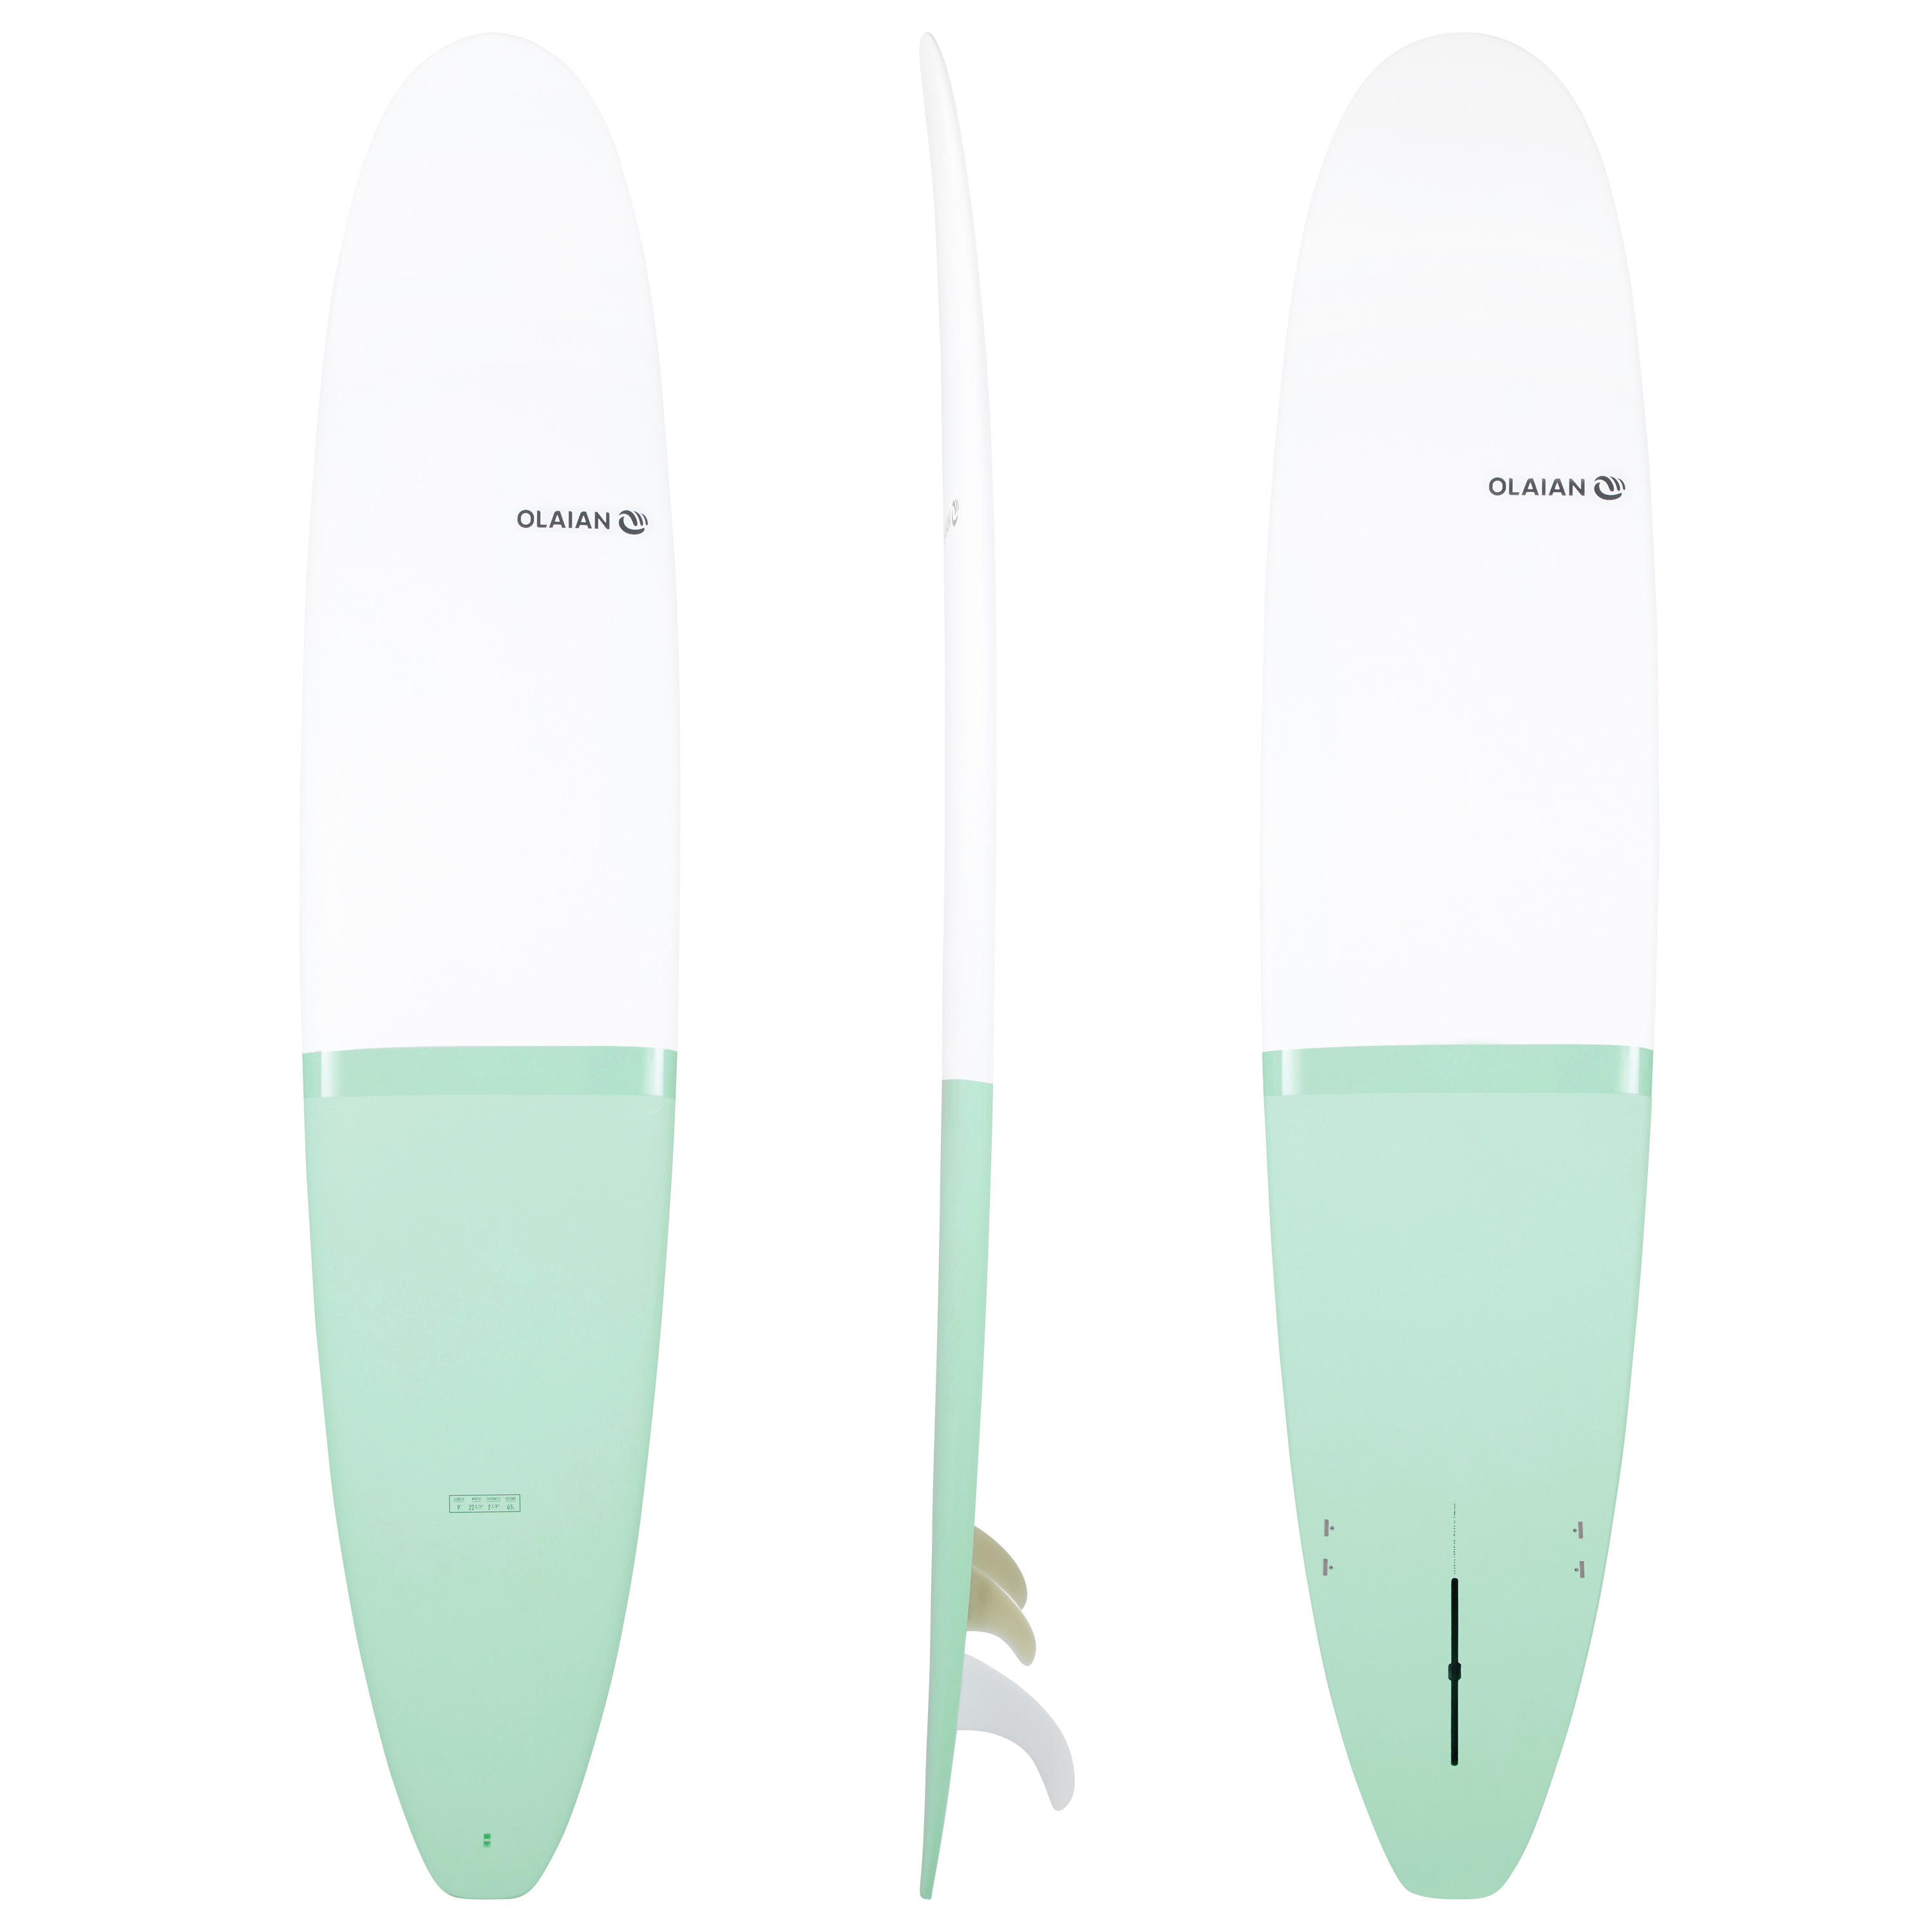 9' longboard surfboard with FCS fins 